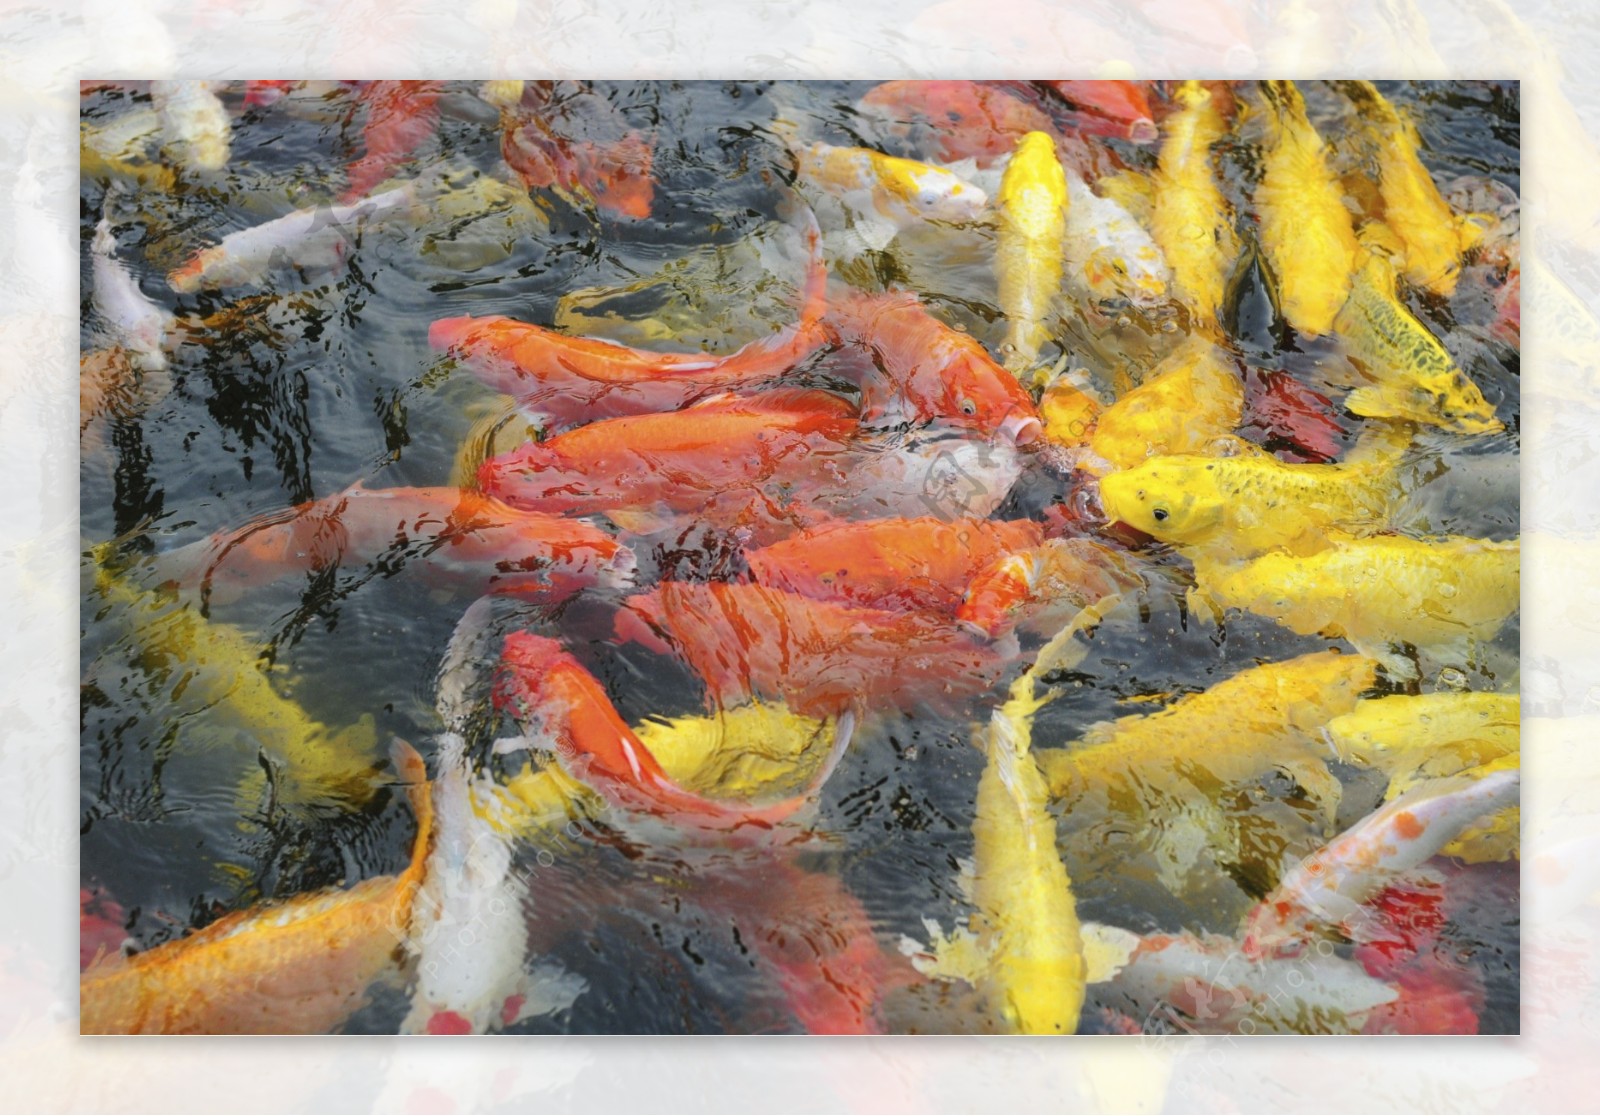 观赏鱼之红黄锦鲤图片